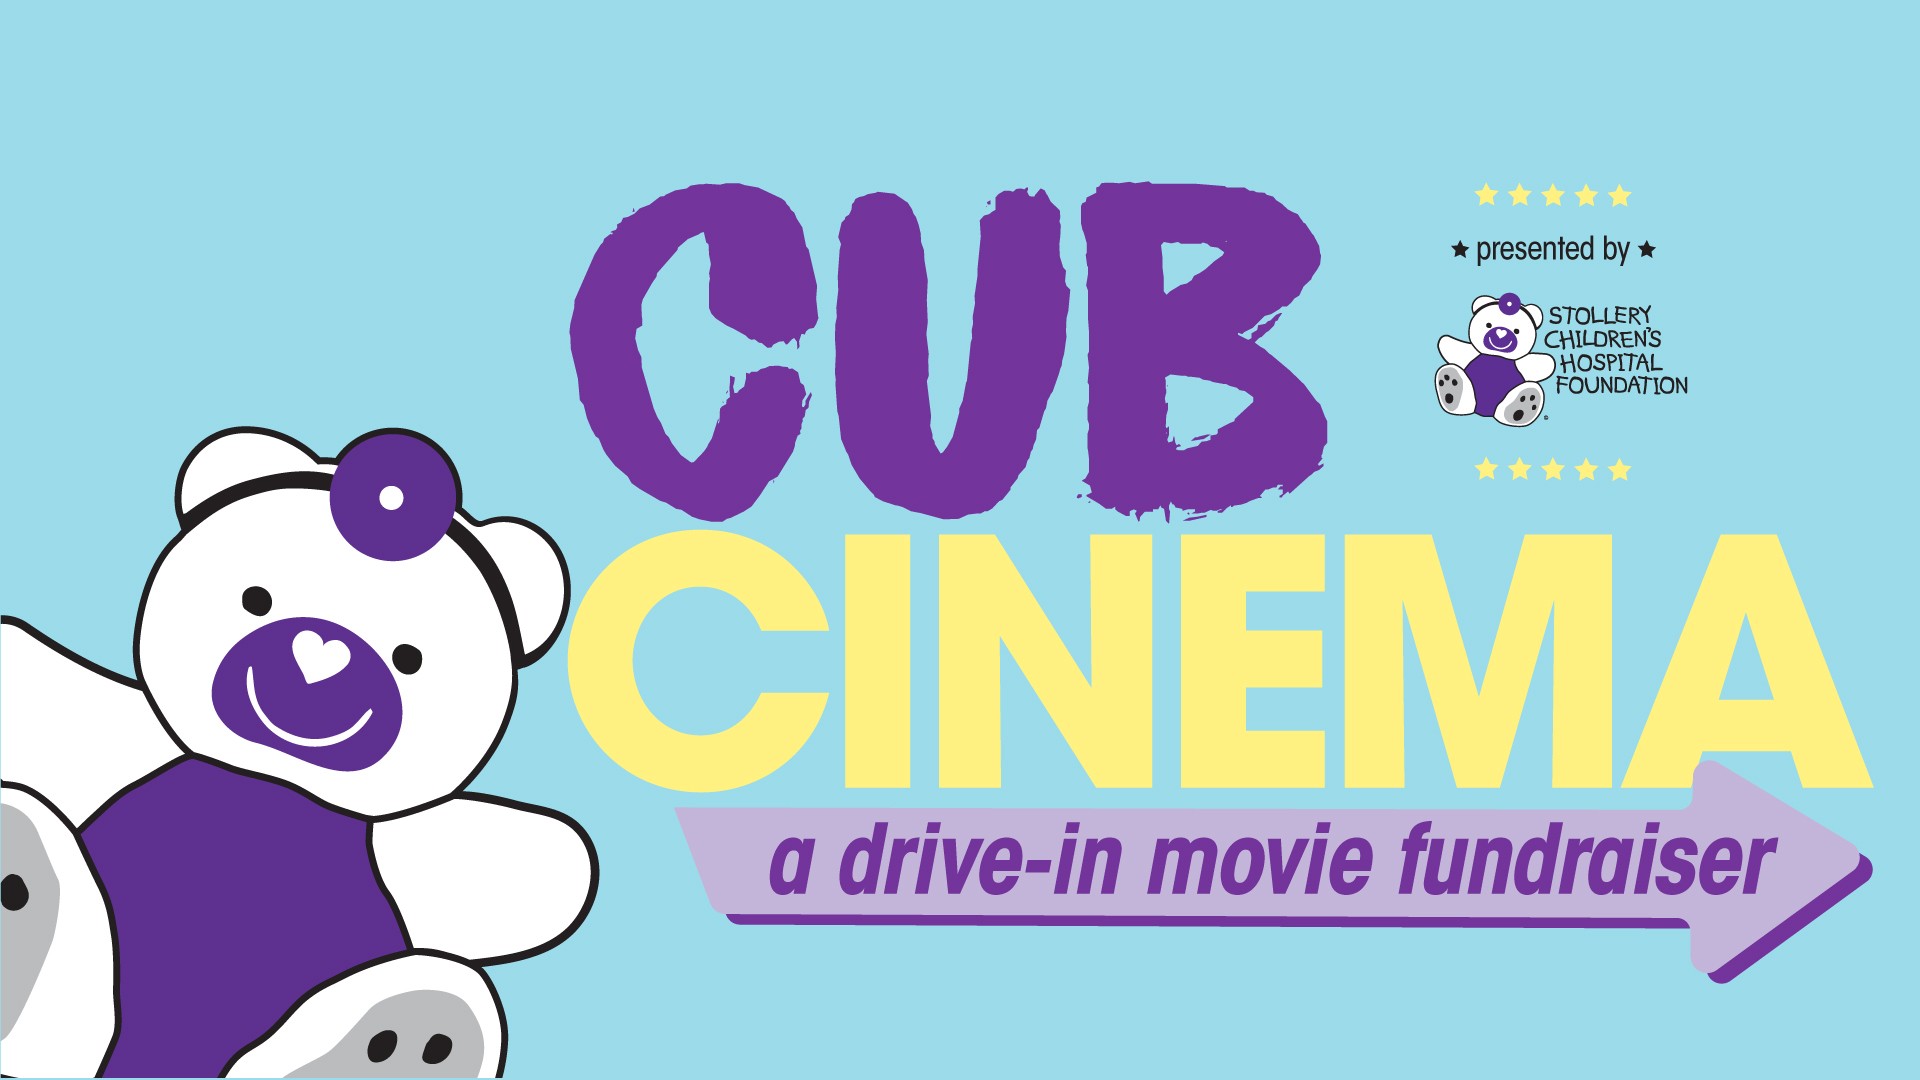 Cub Cinema Drine-In